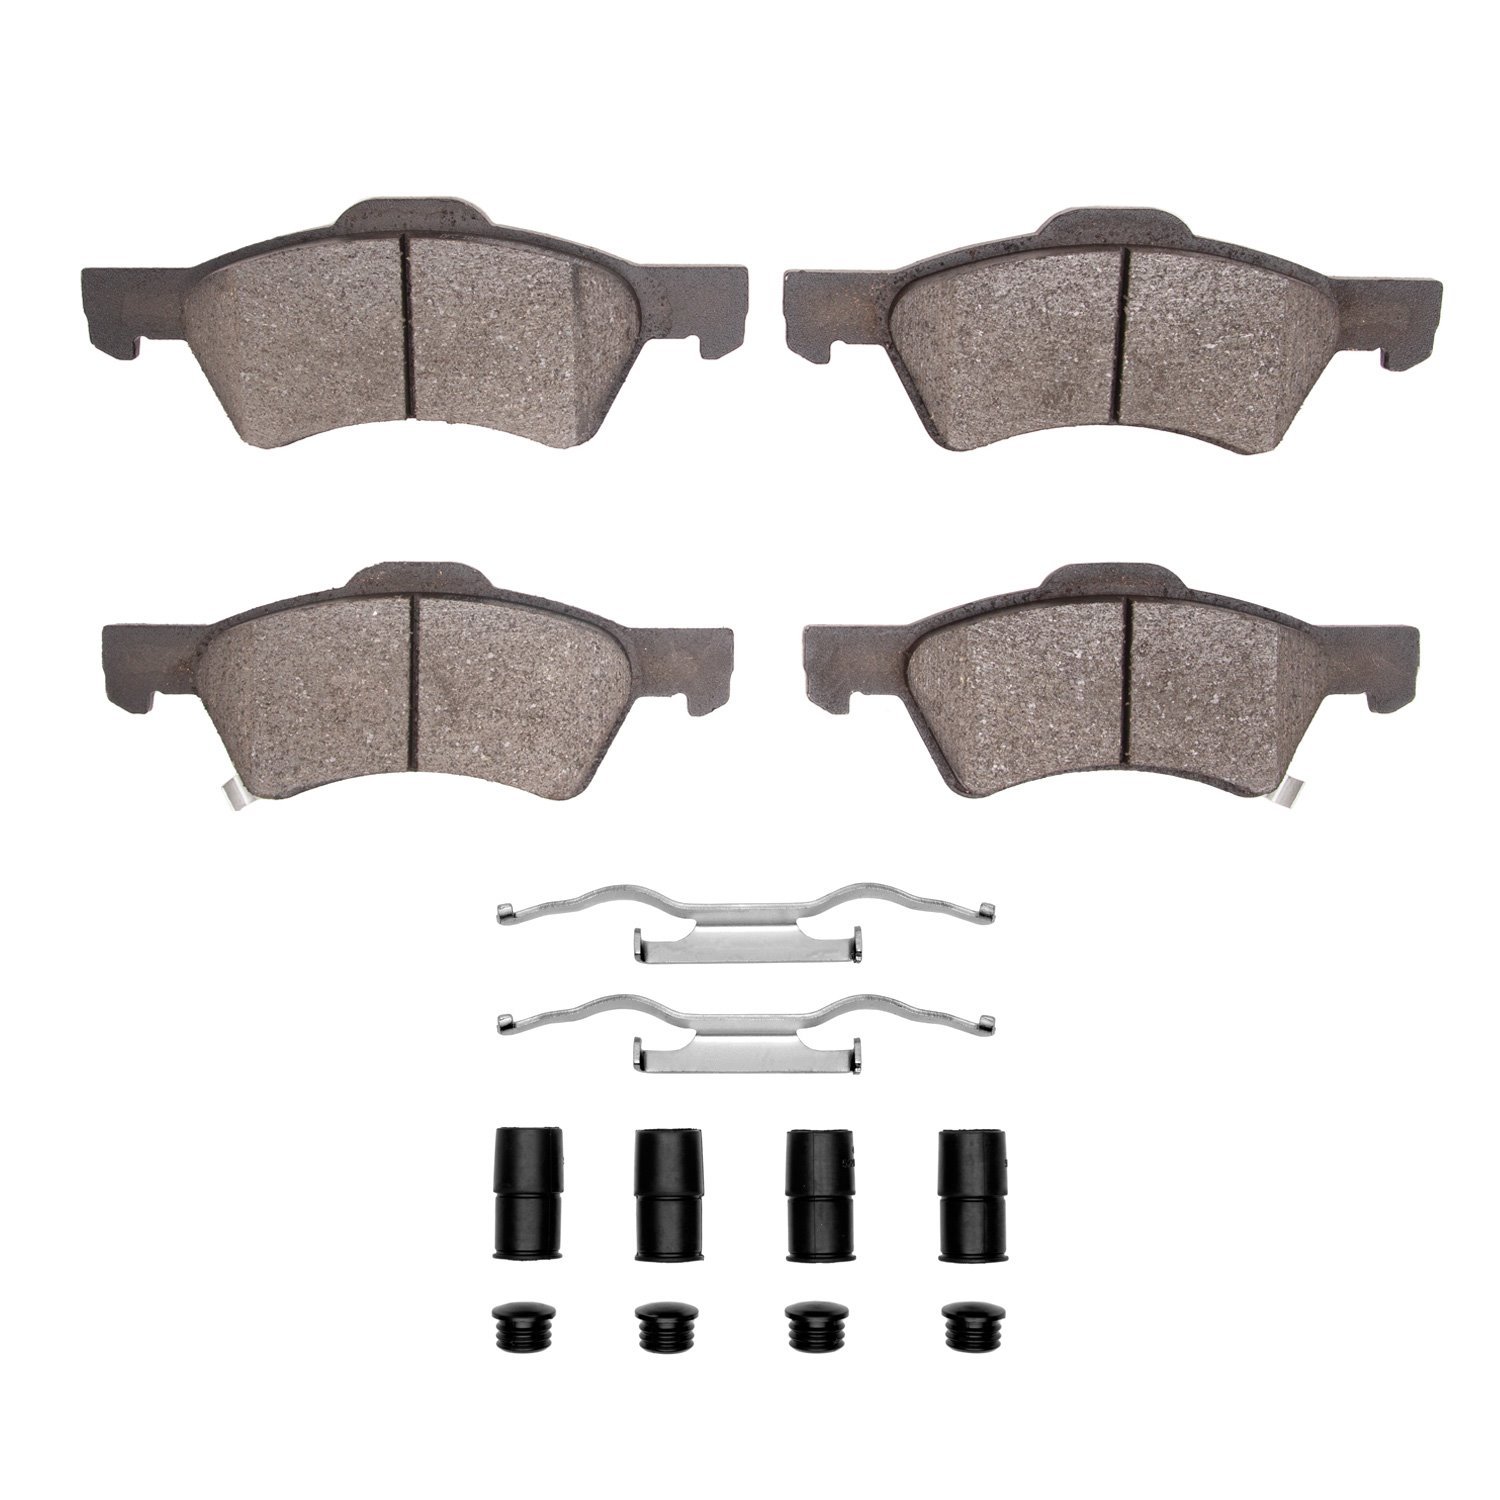 1311-0857-01 3000-Series Semi-Metallic Brake Pads & Hardware Kit, 2001-2007 Mopar, Position: Front